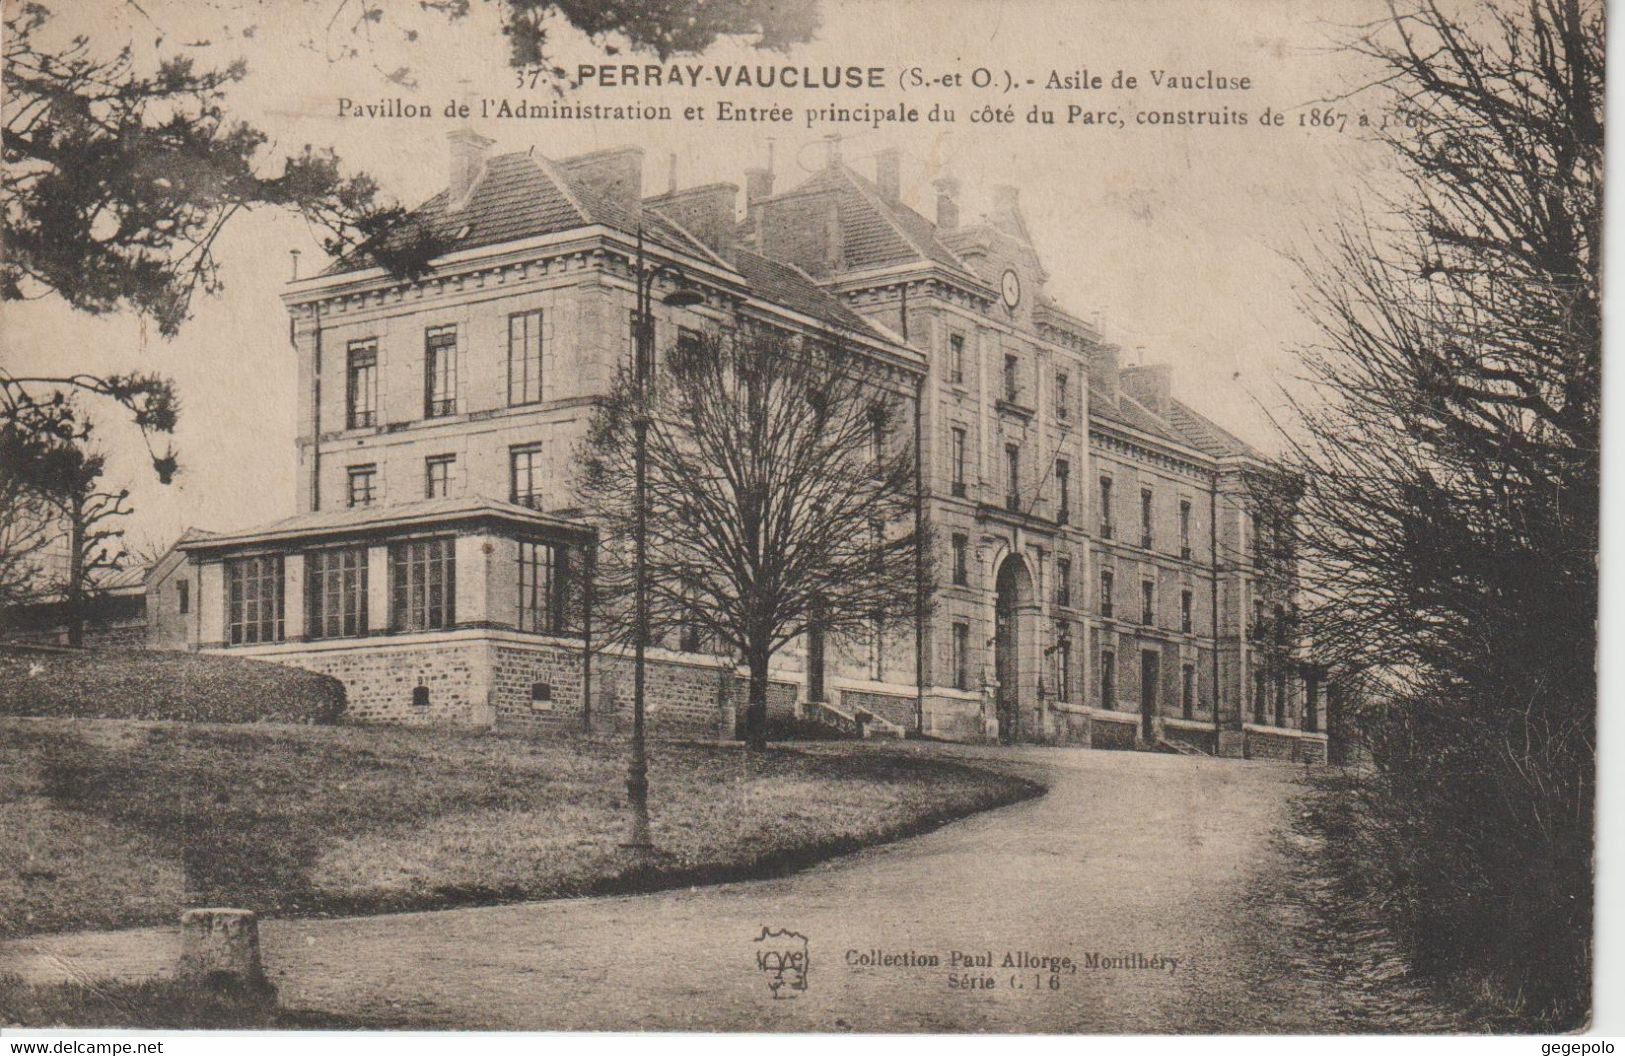 PERRAY - VAUCLUSE - Asile De Vaucluse - Pavillon De L'Administration Et Entrée Principale - Sainte Genevieve Des Bois